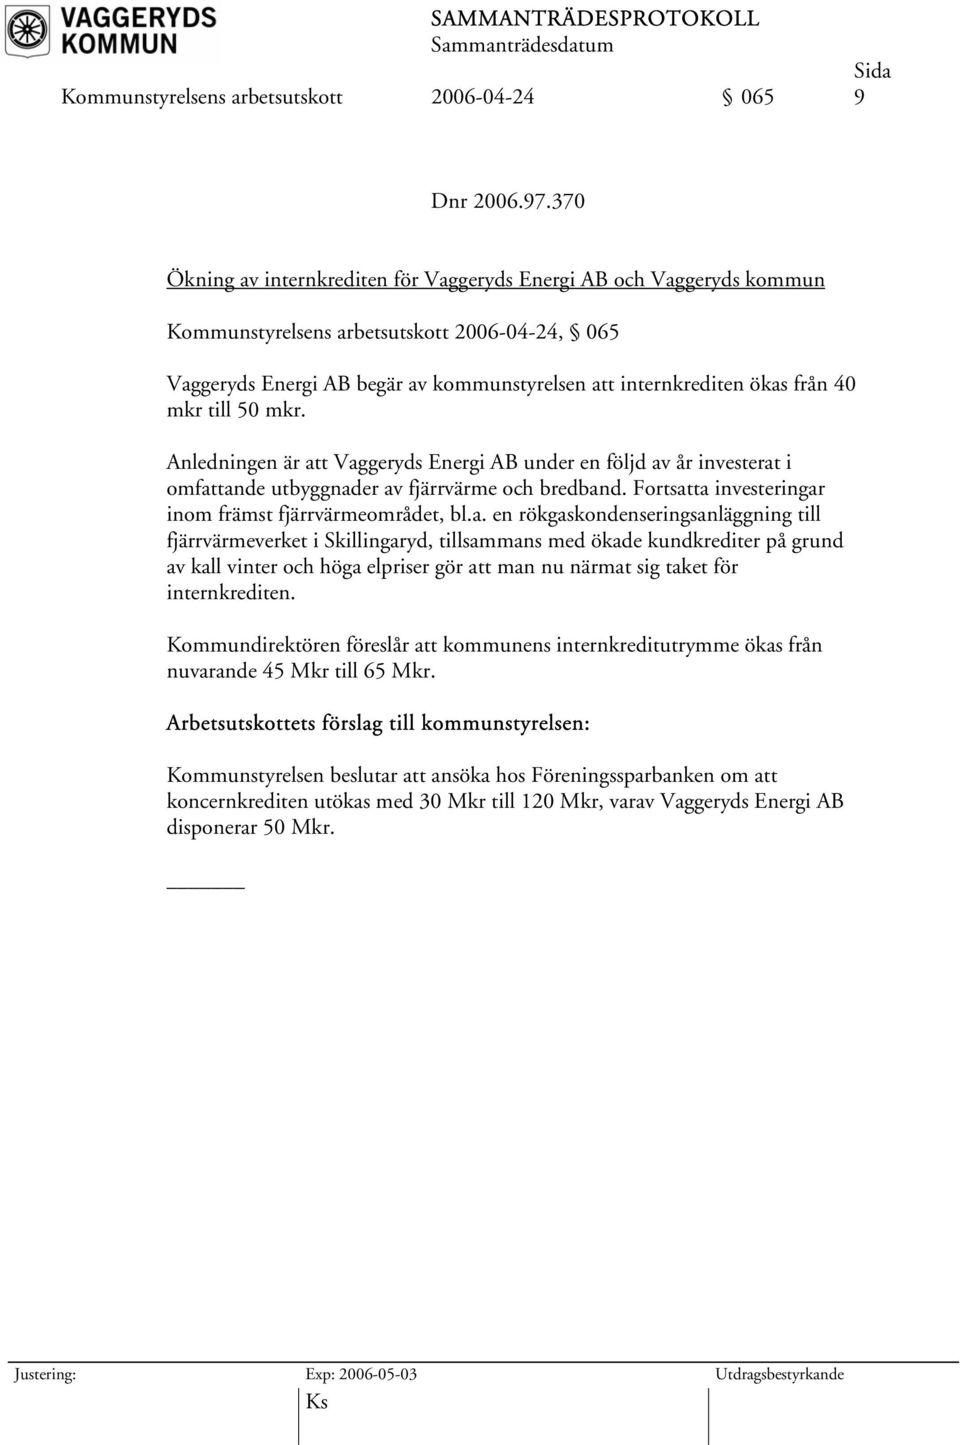 mkr till 50 mkr. Anledningen är att Vaggeryds Energi AB under en följd av år investerat i omfattande utbyggnader av fjärrvärme och bredband. Fortsatta investeringar inom främst fjärrvärmeområdet, bl.